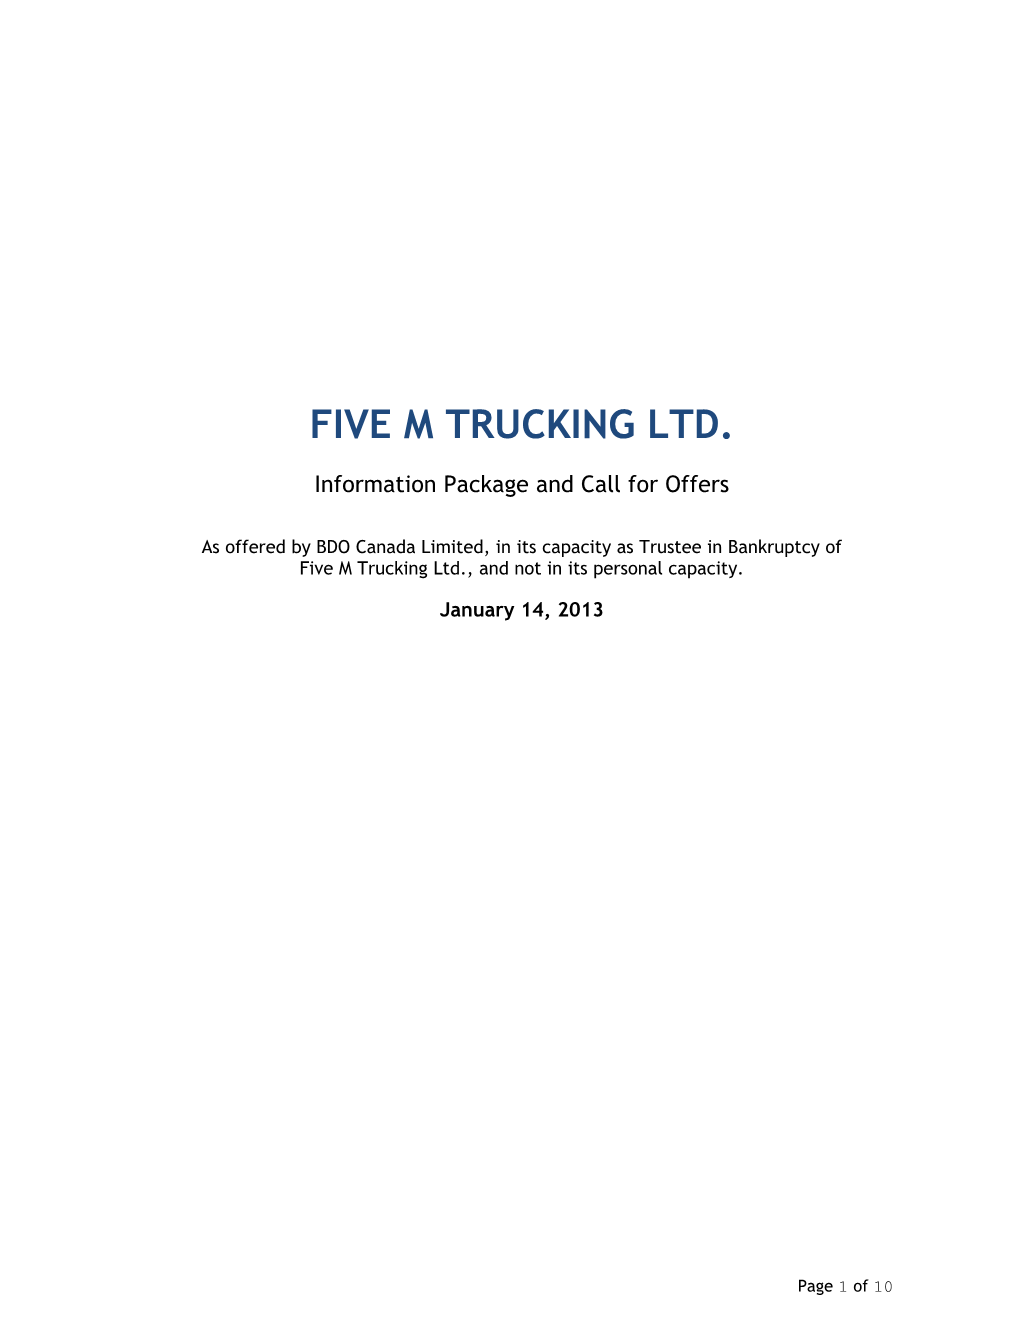 Five M Trucking Ltd